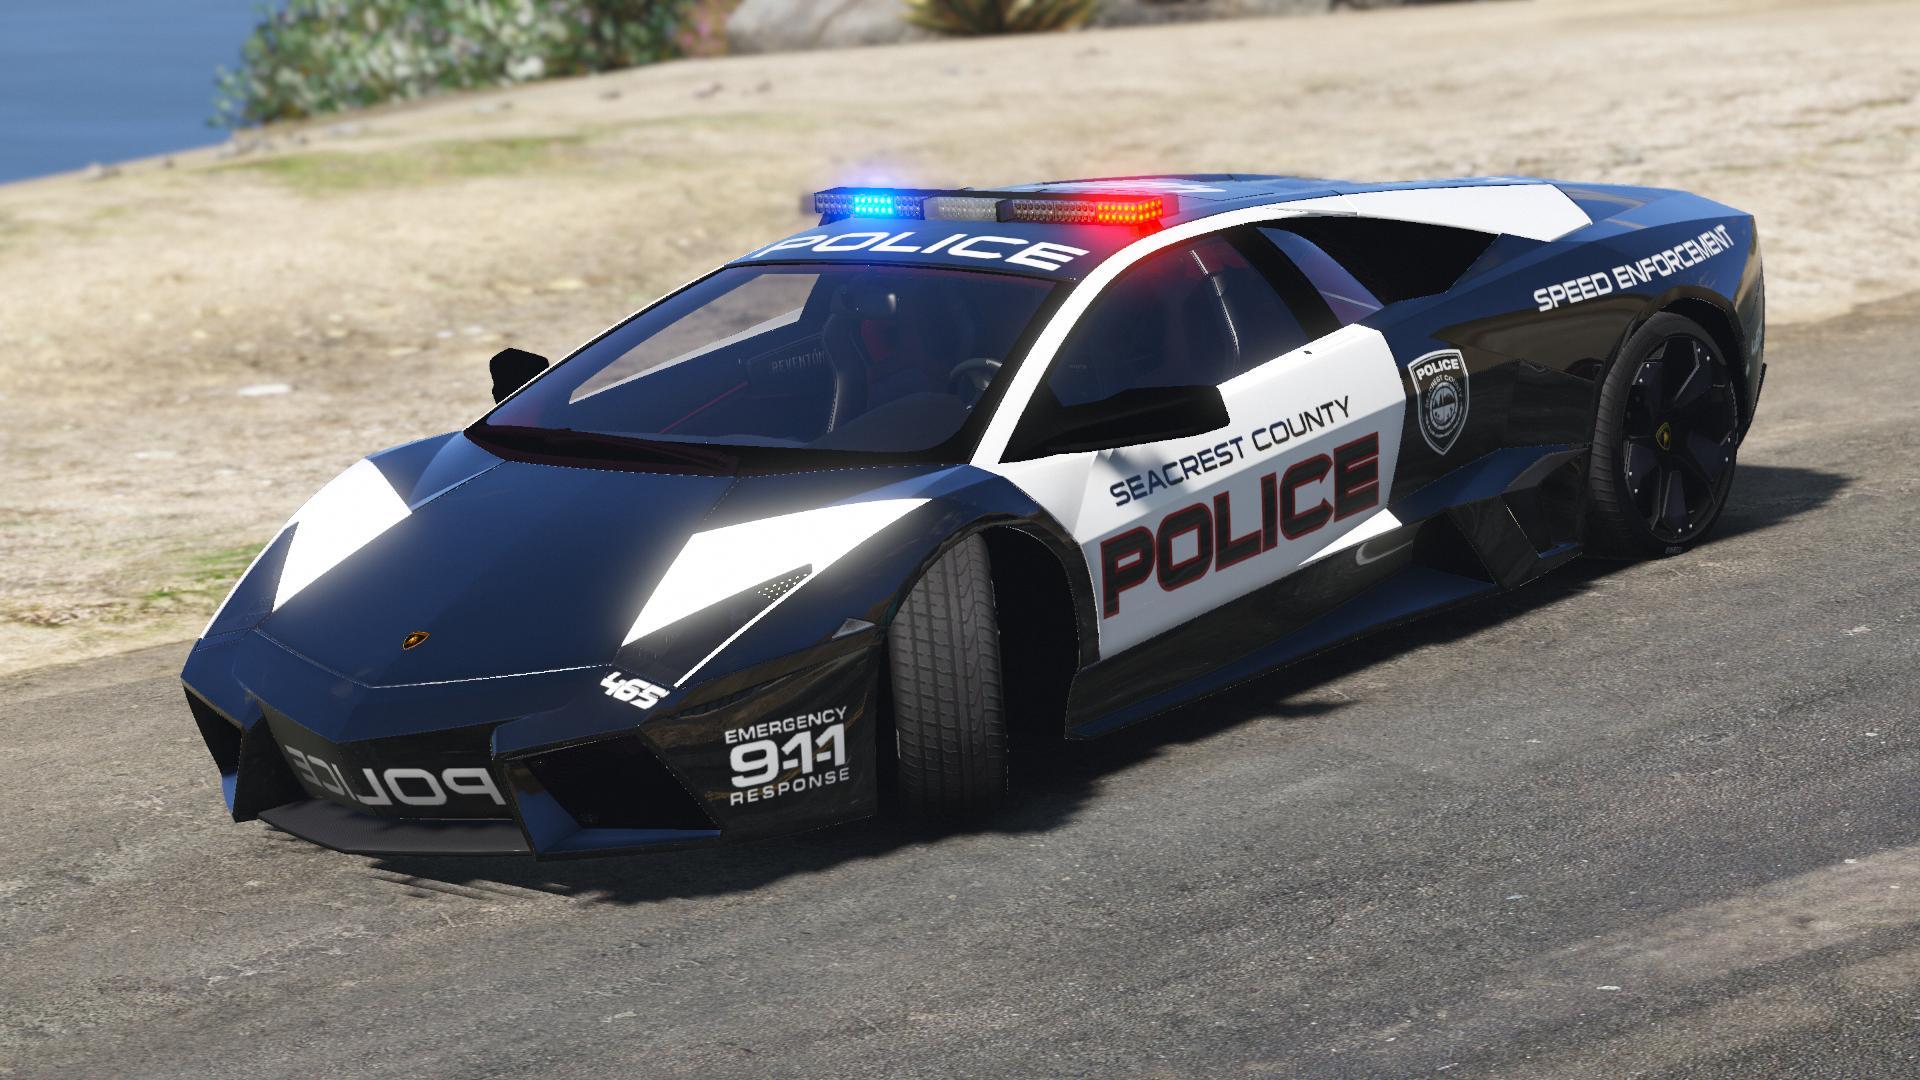 Lamborghini Reventón Police NFS - Hot Pursuit + Template ...